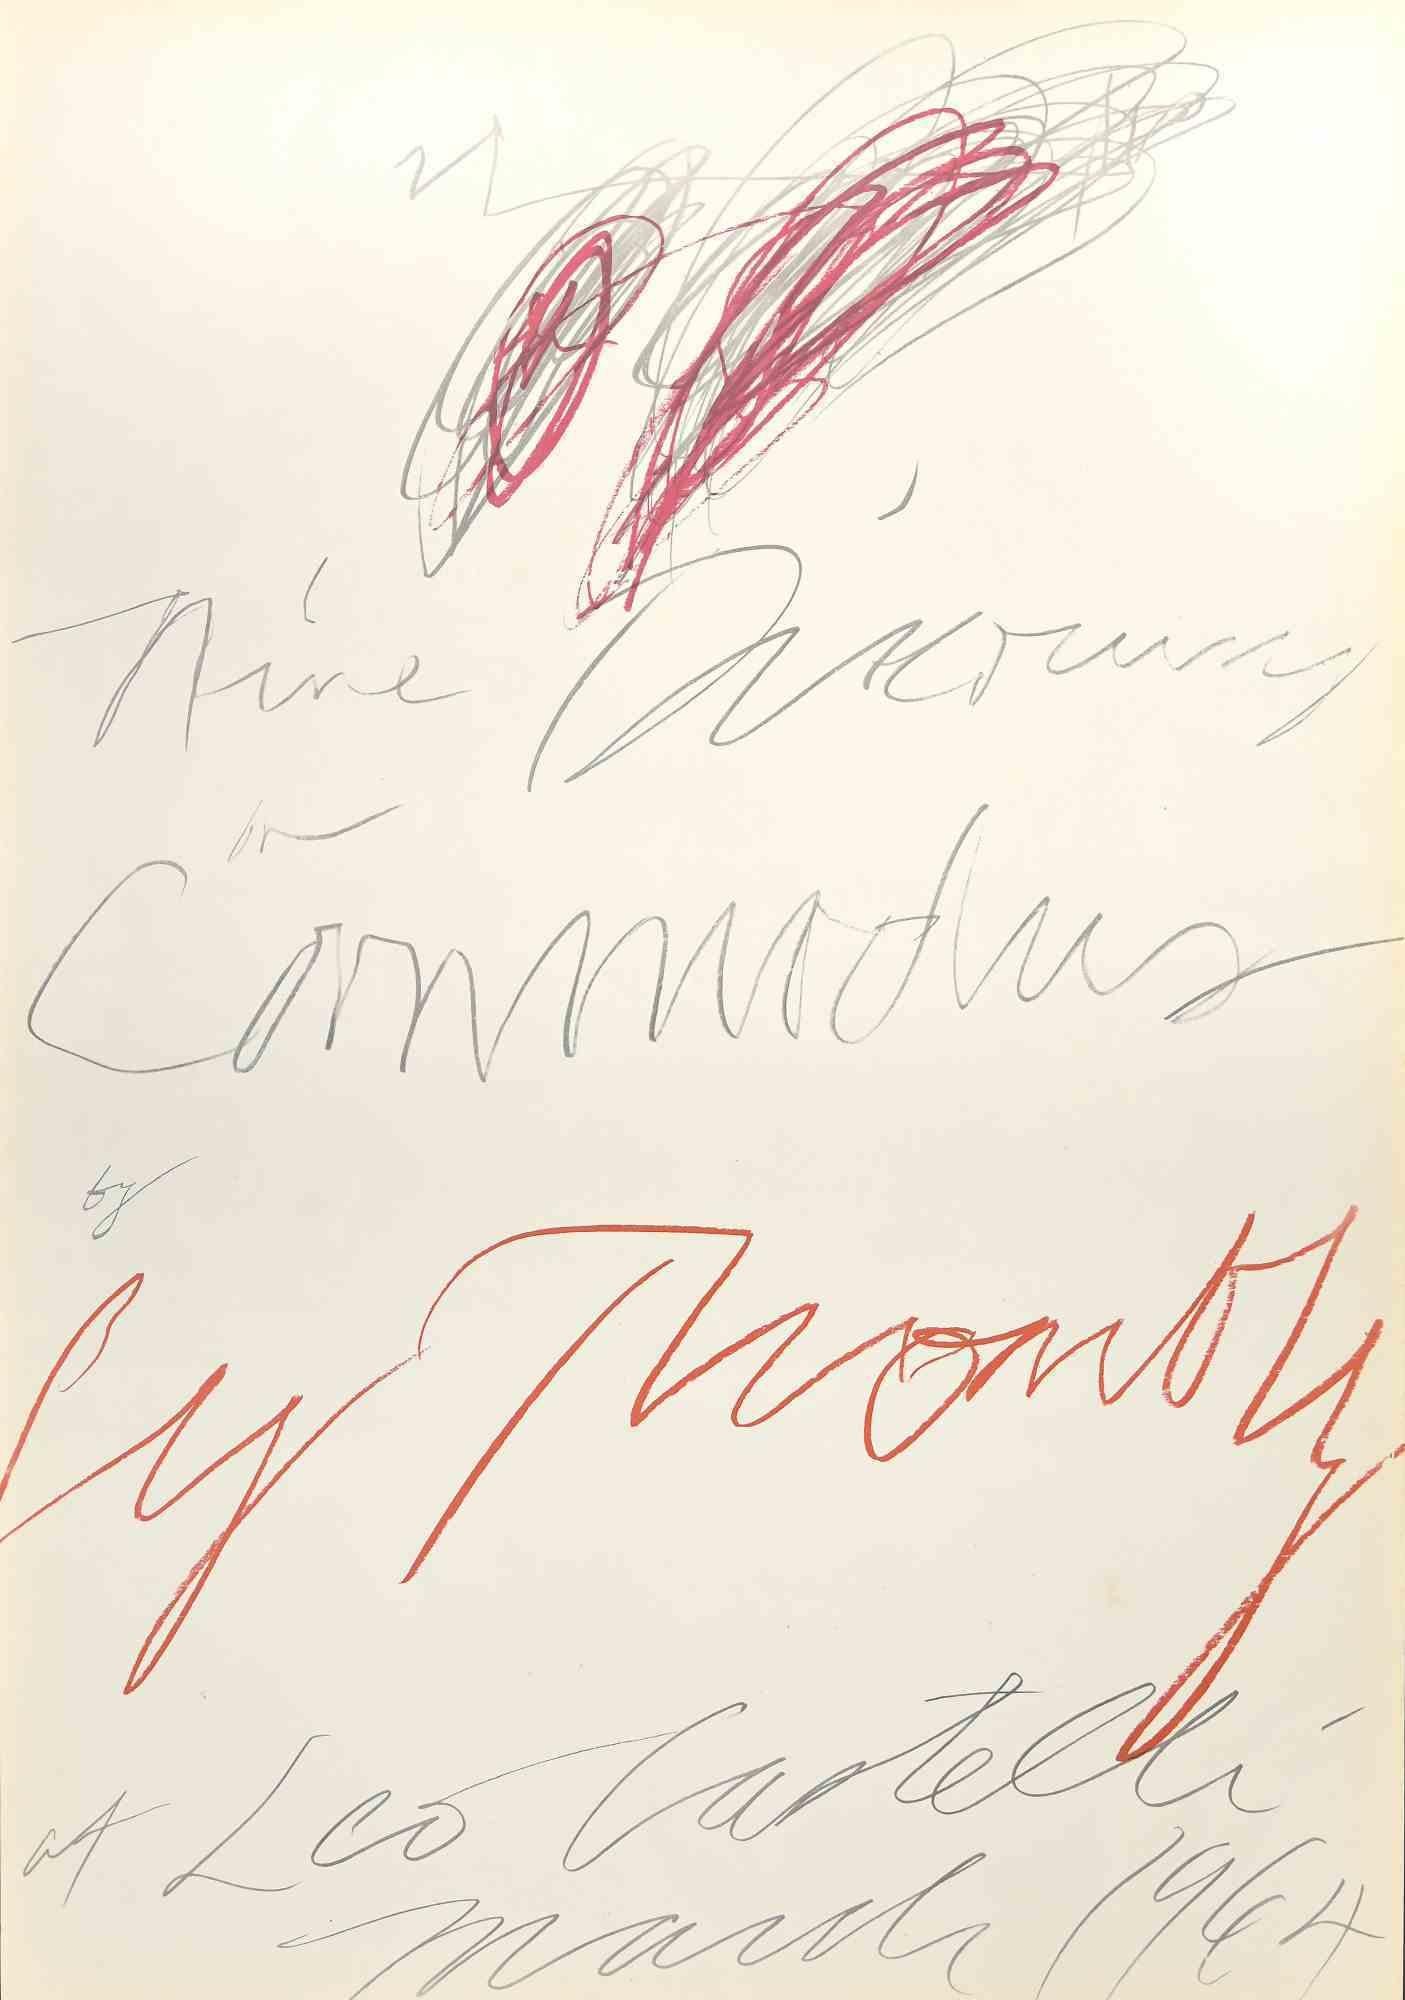 Twombly Exhibition - Leo Castelli Gallery est une lithographie colorée réalisée en 1964.

Cette œuvre a été réalisée à l'occasion de l'exposition de Cy Twombly qui s'est tenue à la Leo Heldly Gallery à New York en 1964.

La lithographie représente